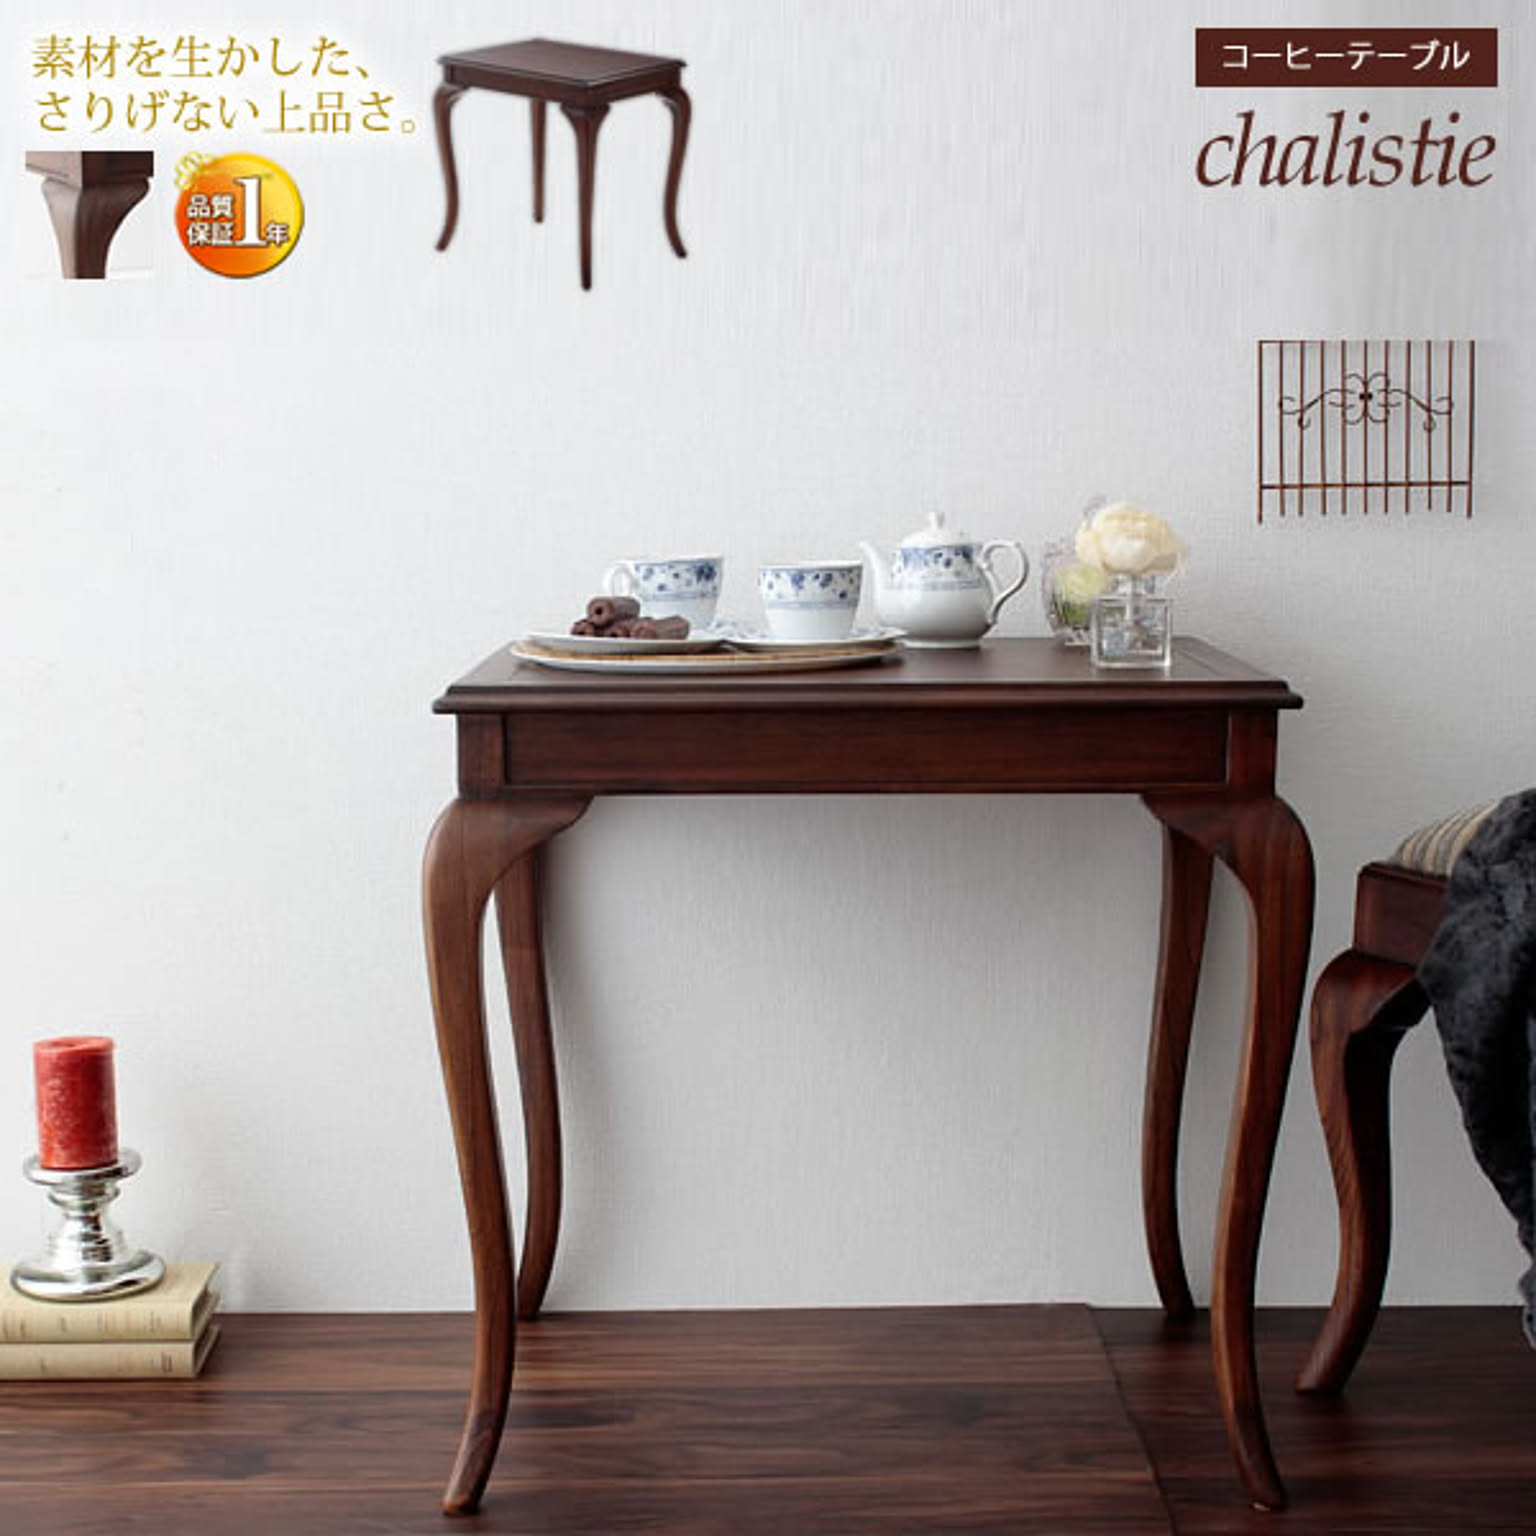 chalistie アンティーク調 英国風 天然木 ブラウン コーヒーテーブル 幅61